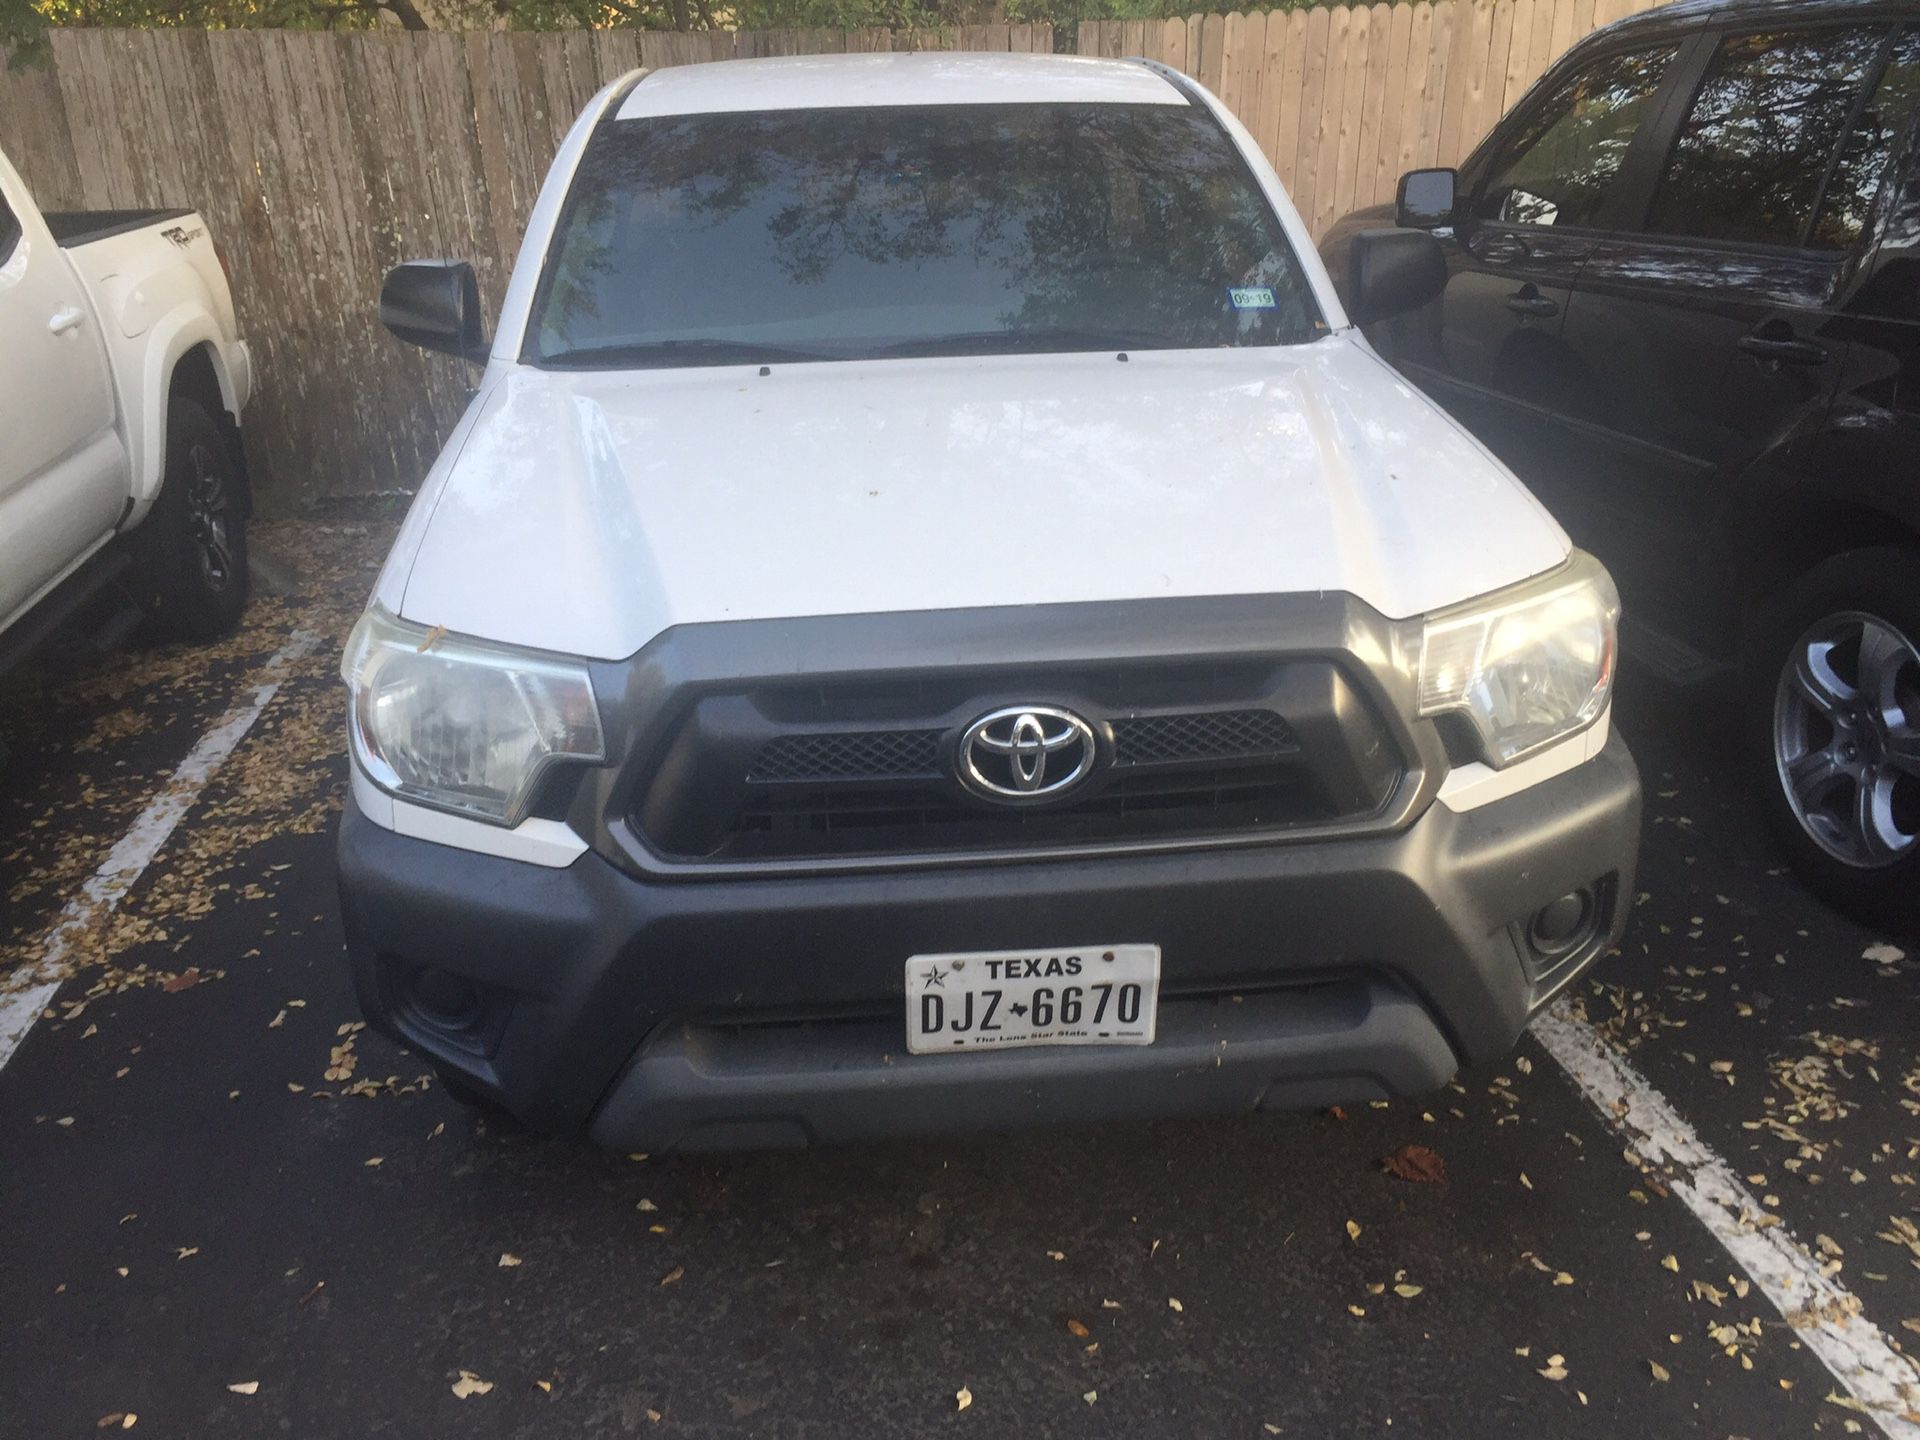 2013 Toyota Tacoma